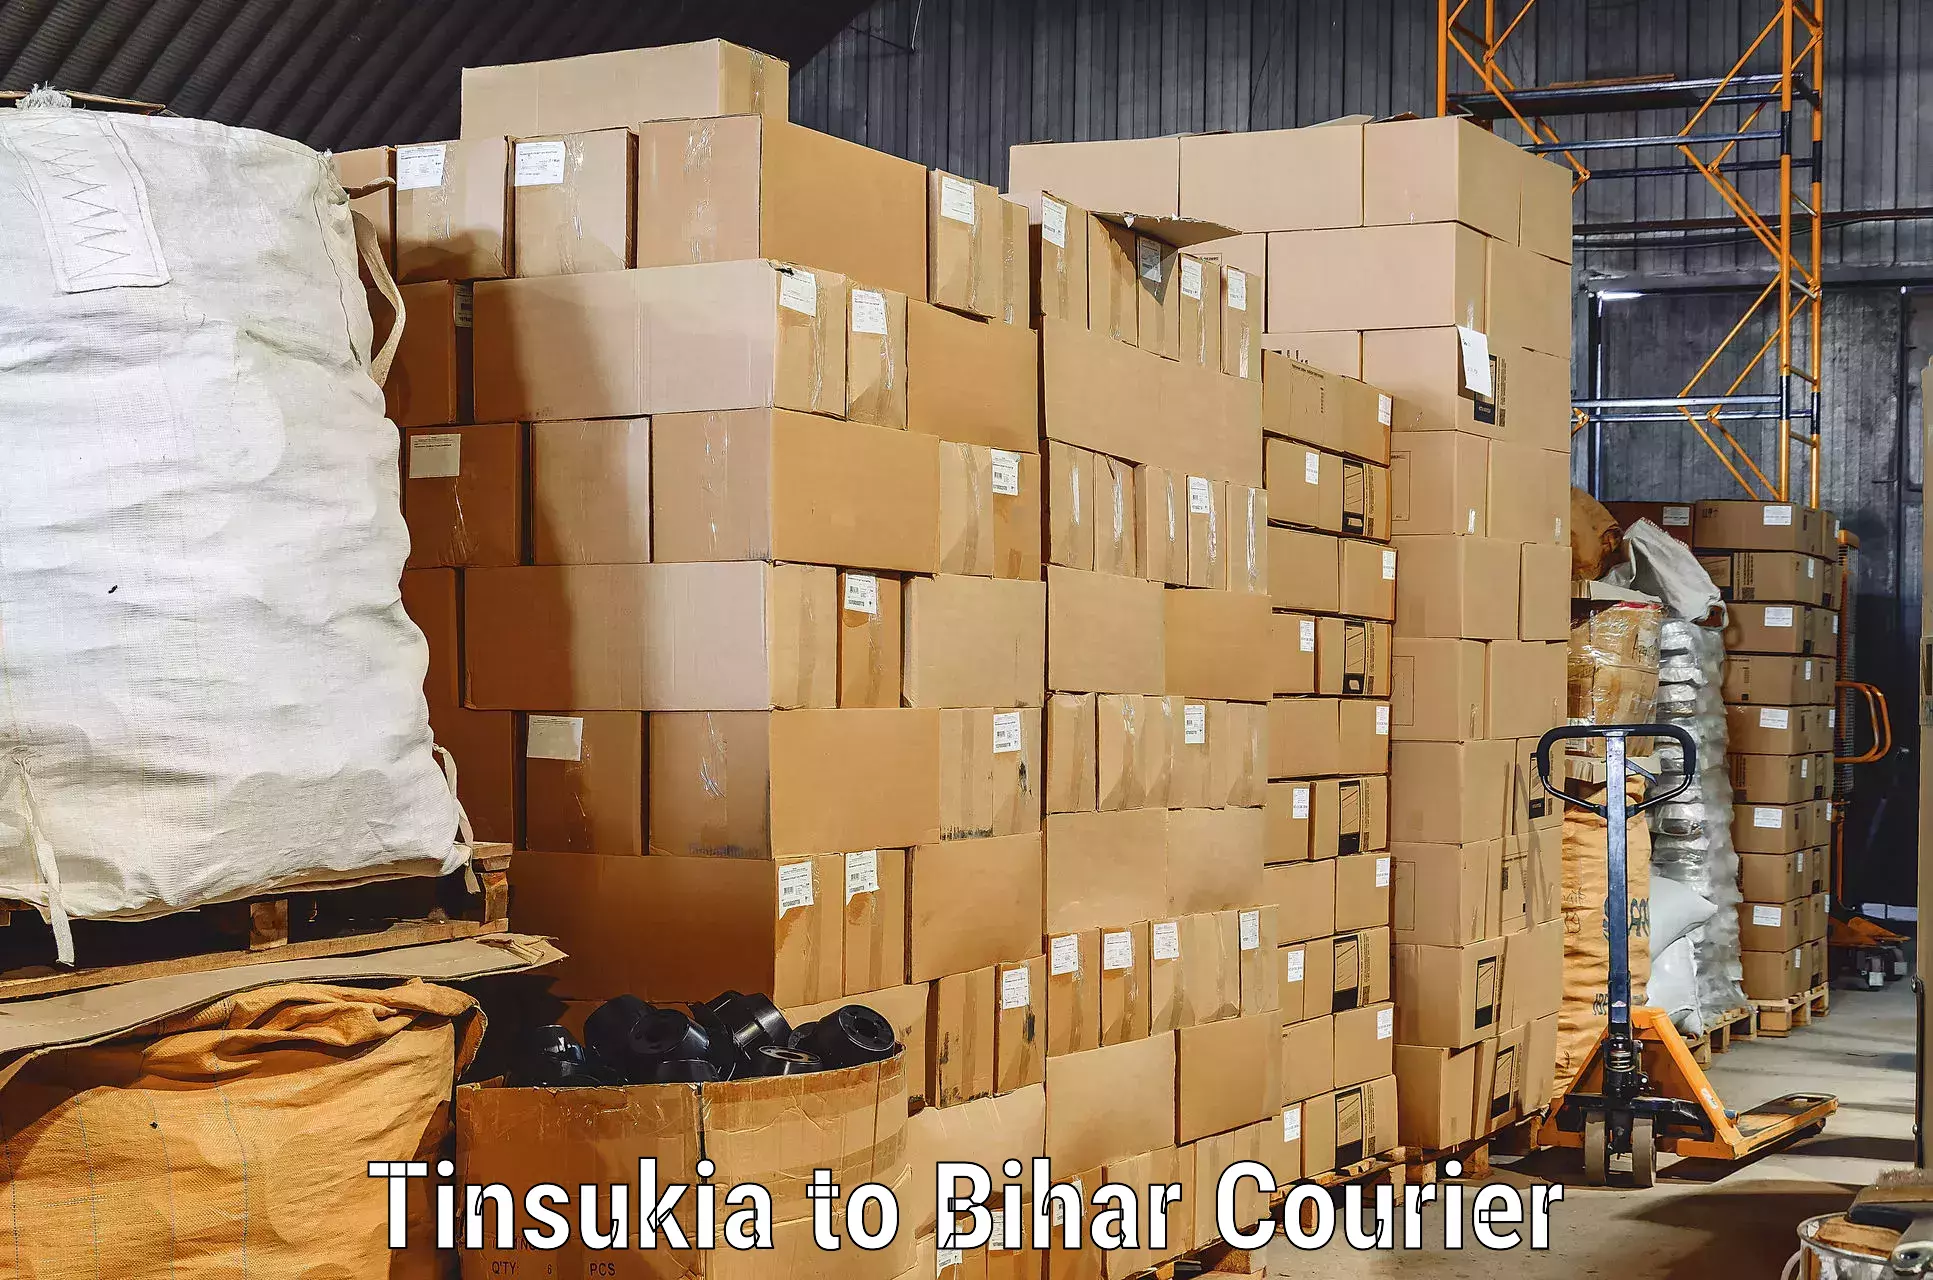 Door-to-door relocation services Tinsukia to Barachati